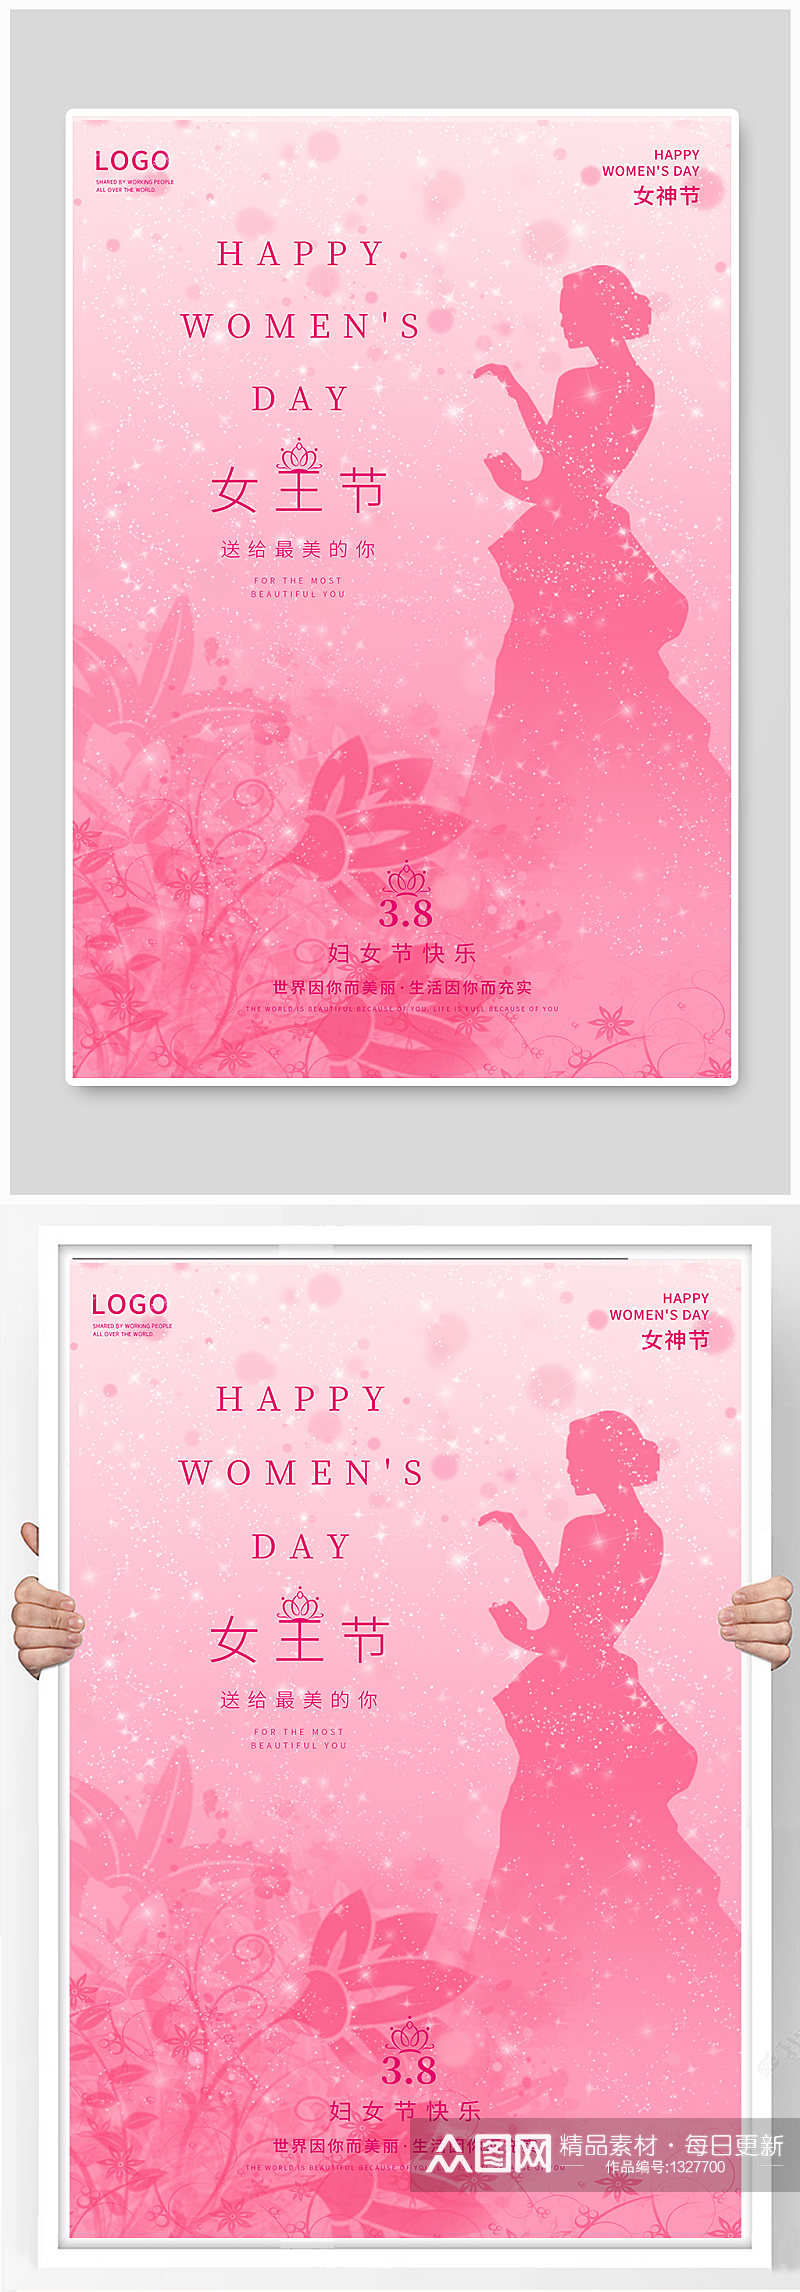 妇女节海报三八女神节商场促销海报爱心优惠素材